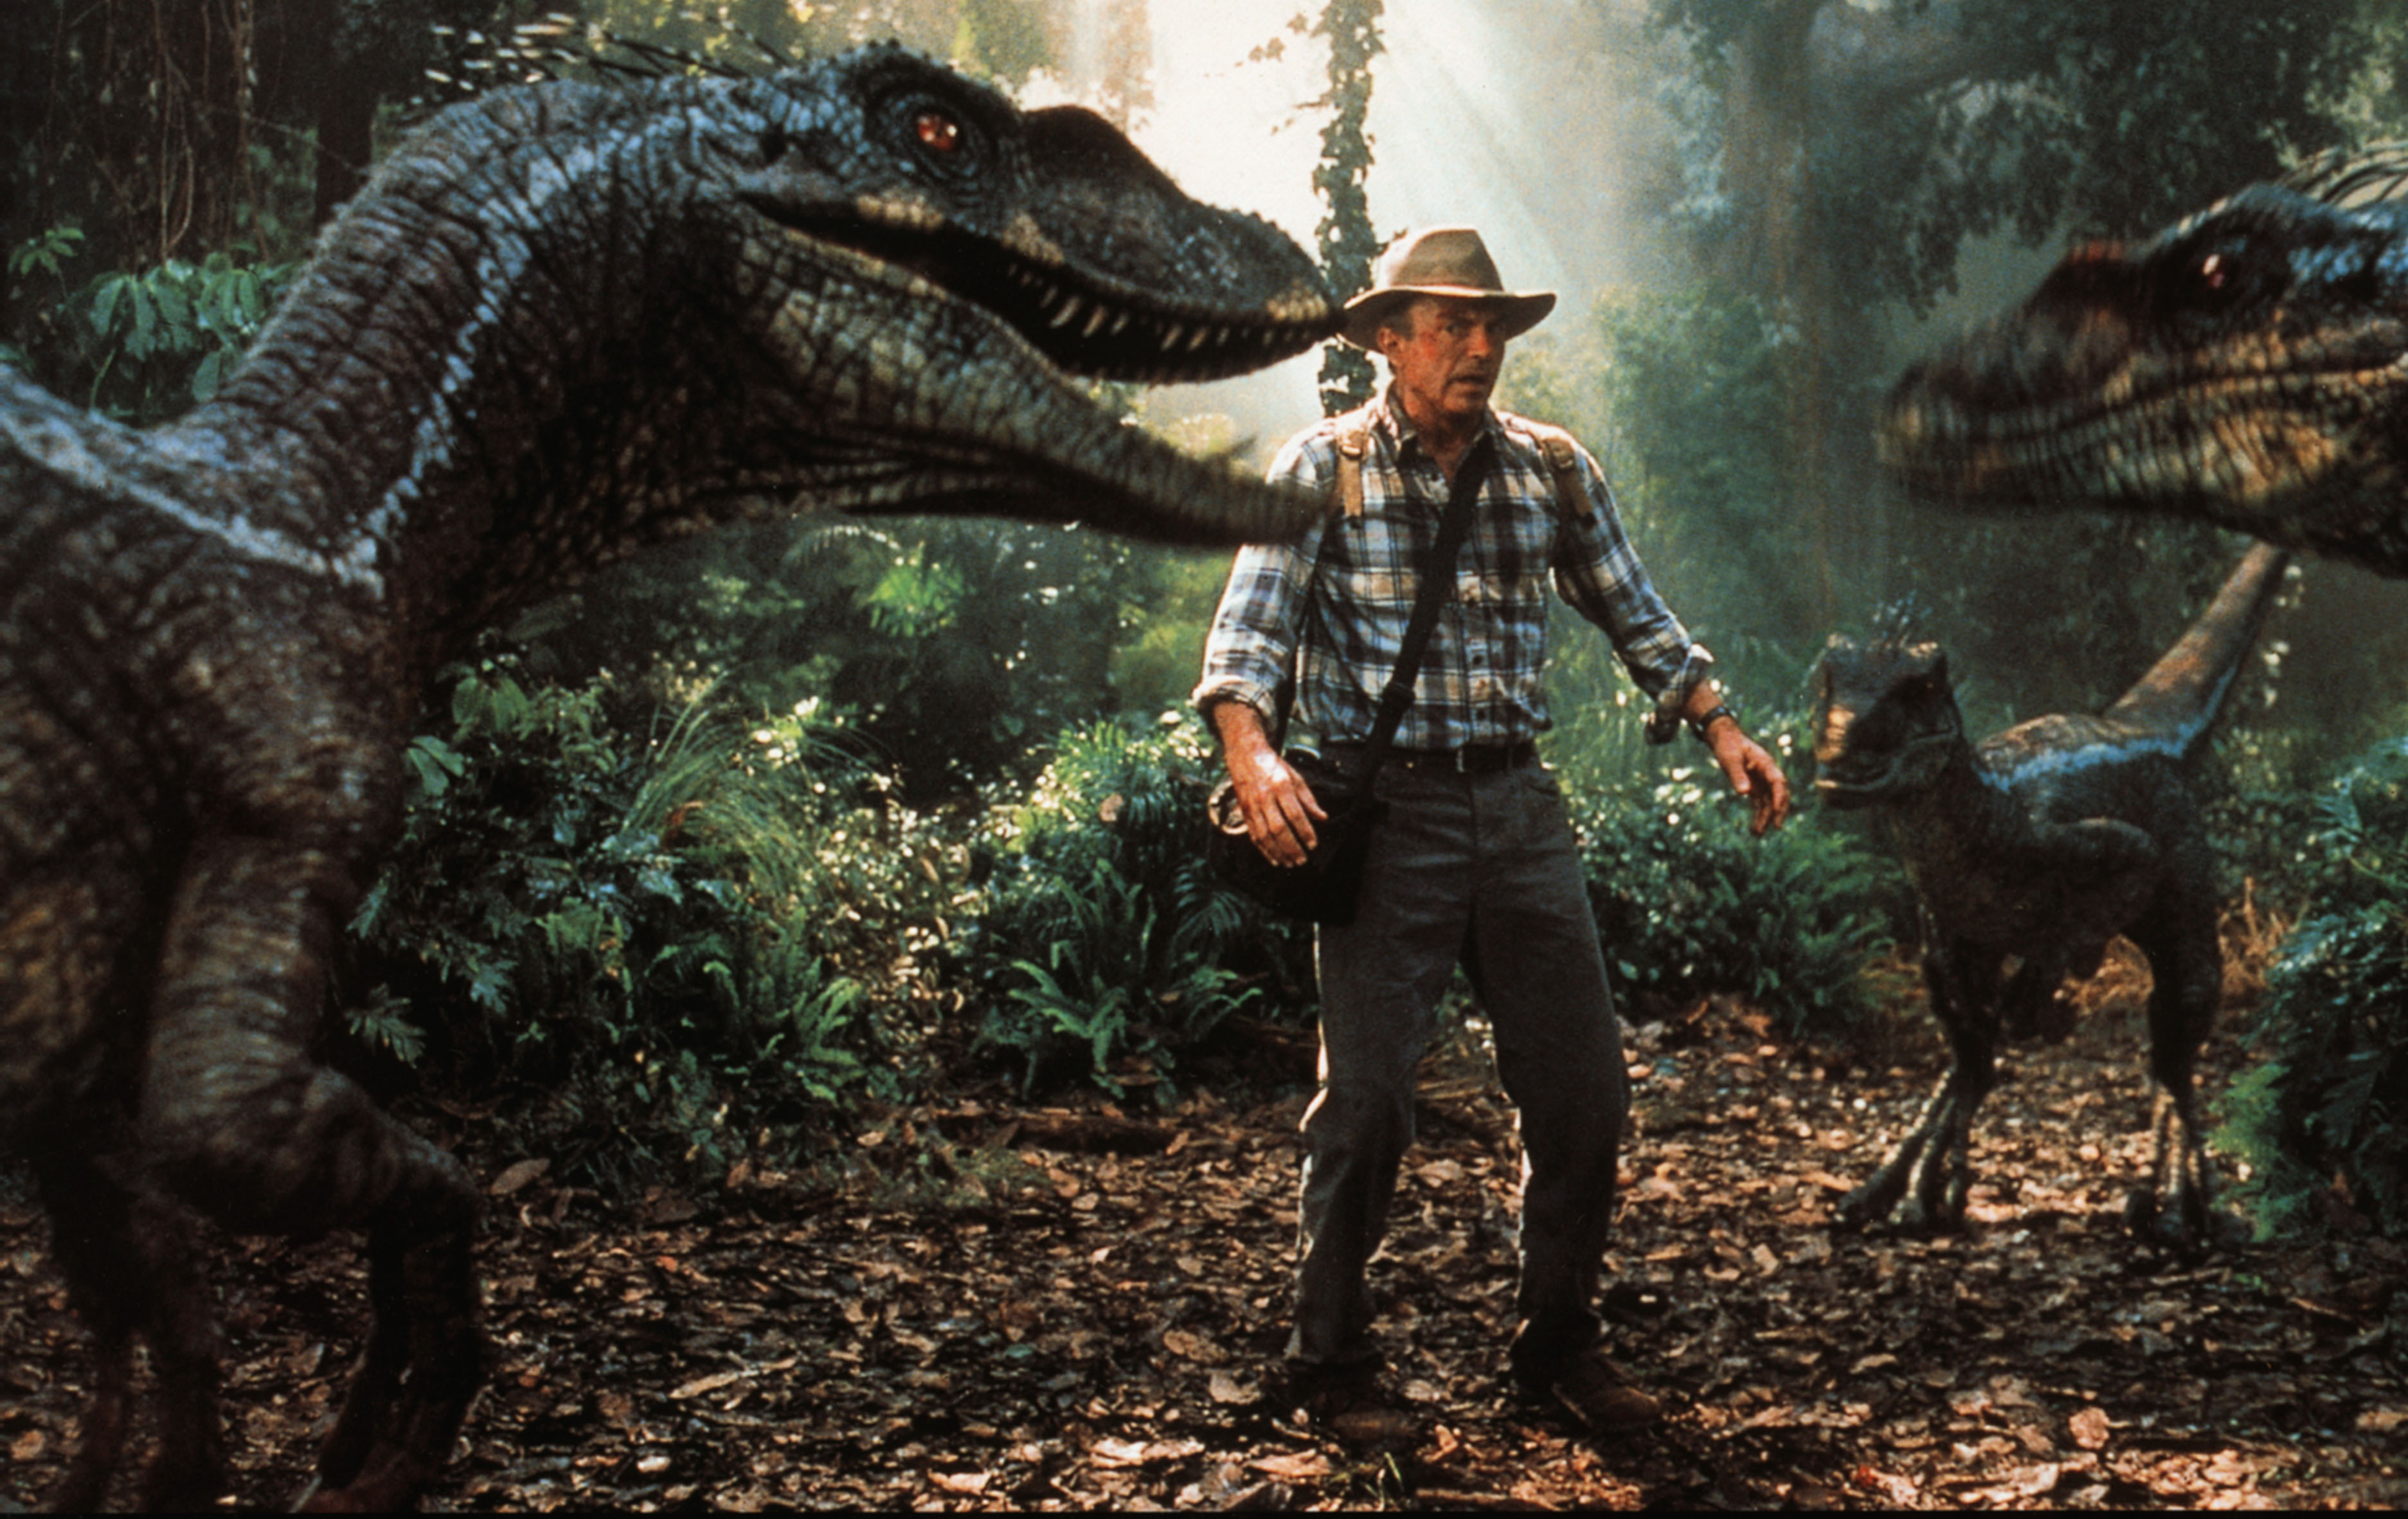 Мир динозавров 3. Парк Юрского периода III» (2001). Уильям Мэйси парк Юрского периода.